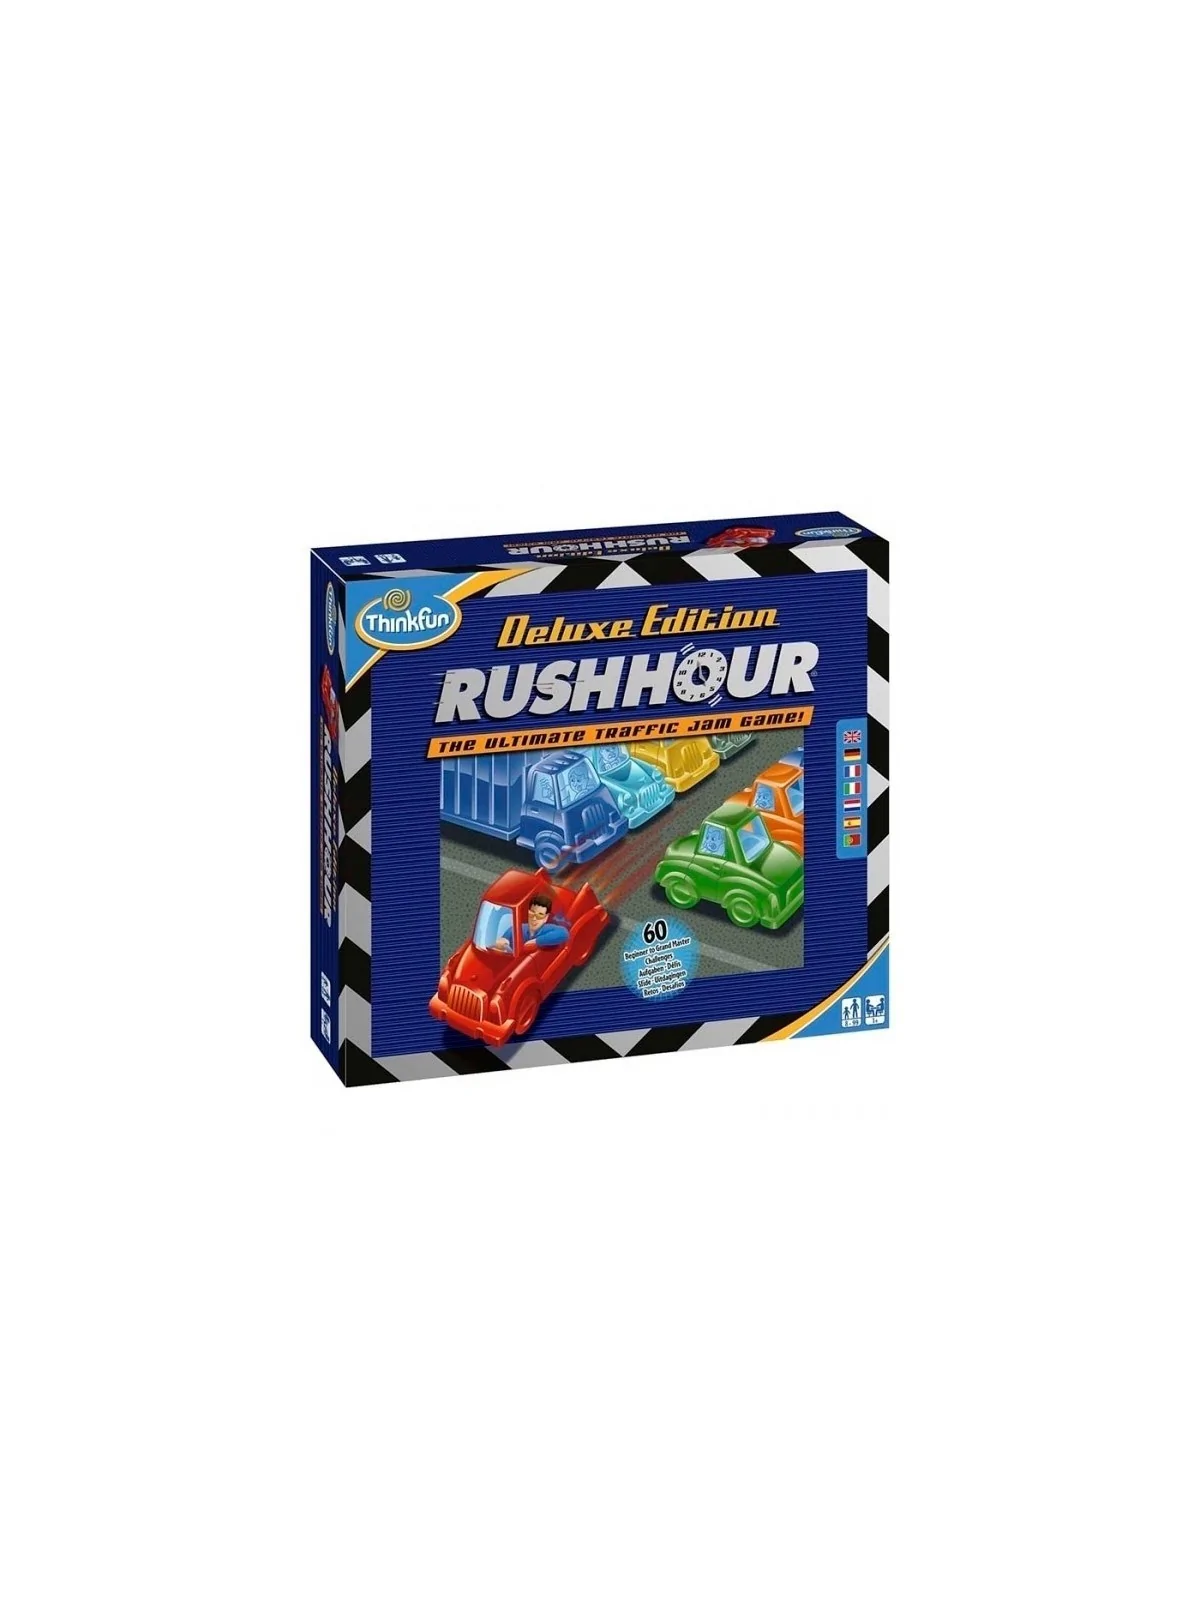 Comprar Rush Hour Deluxe Edition barato al mejor precio 23,36 € de Thi